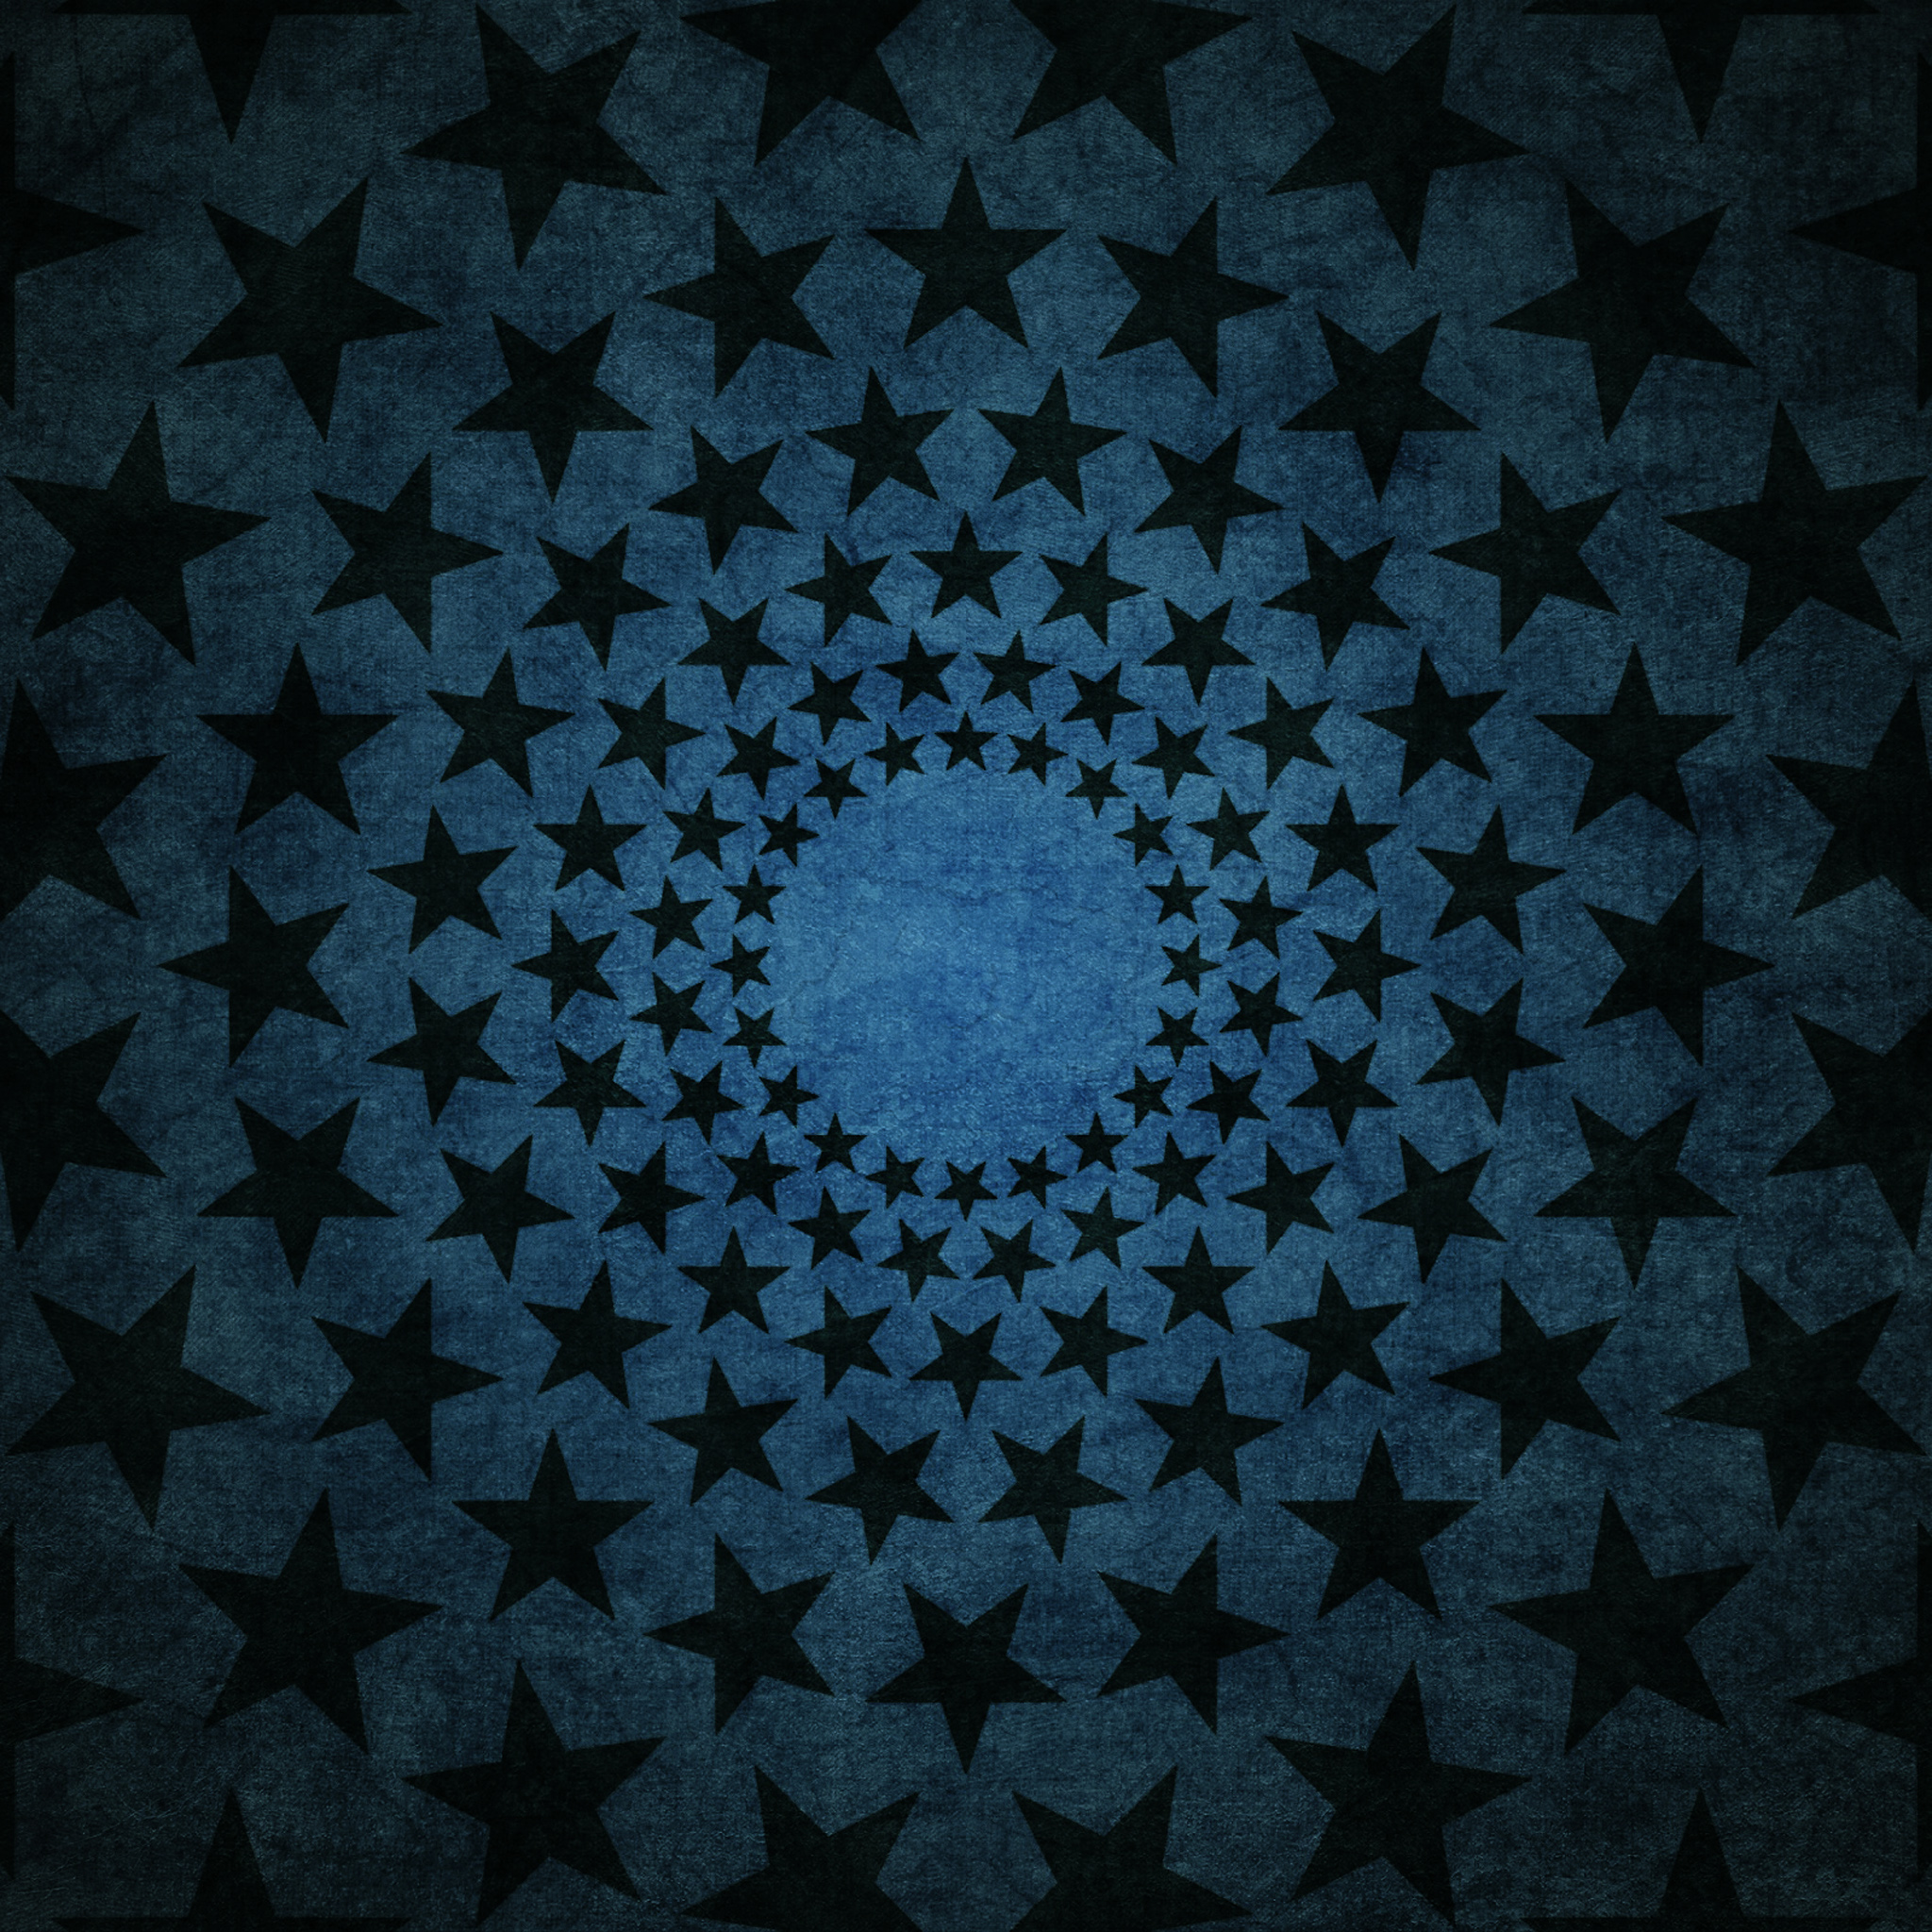 Black Stars on Blue | Flickr - Photo Sharing!